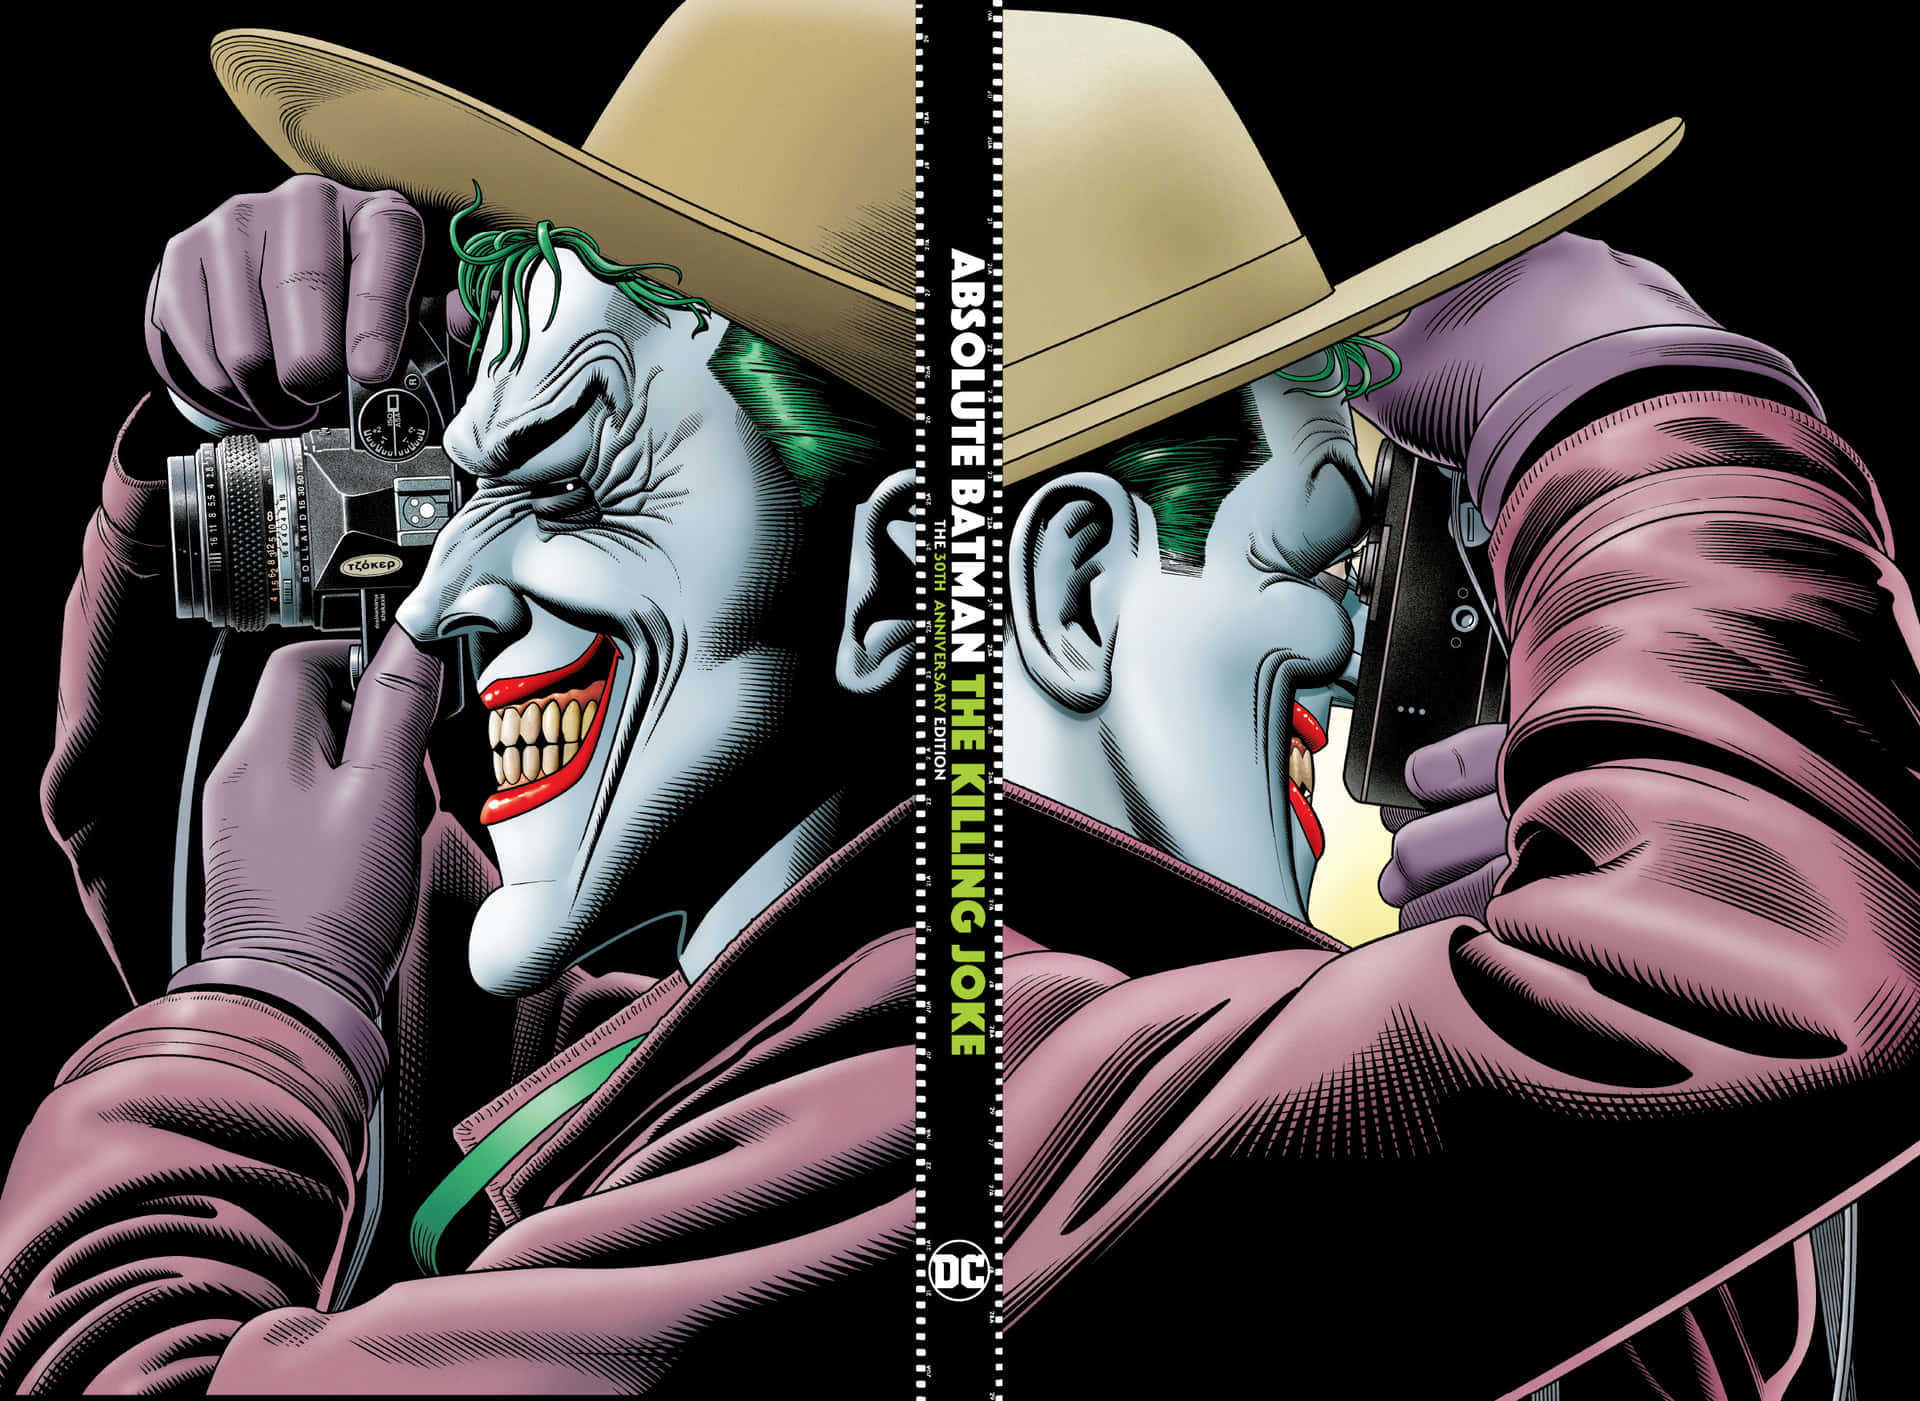 Batman and Joker face off in The Killing Joke Wallpaper